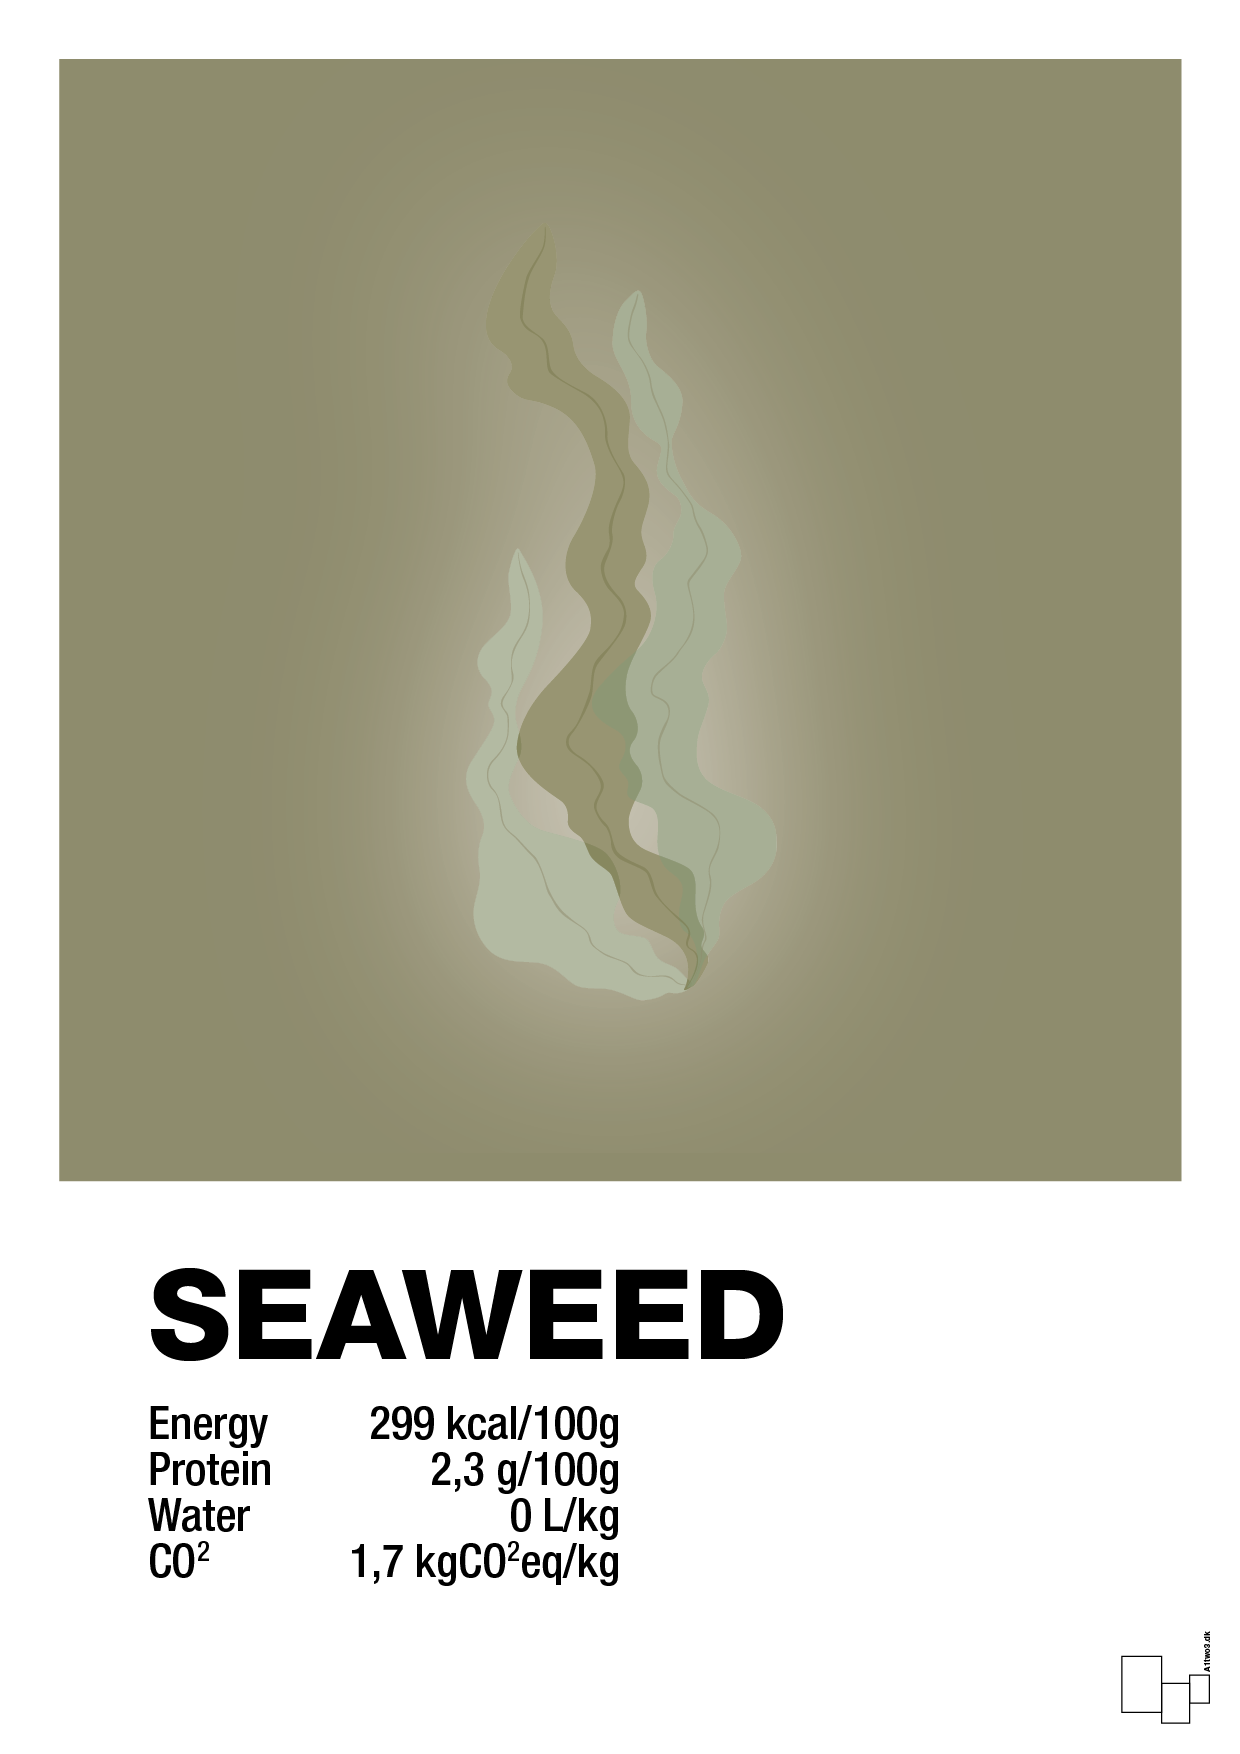 seaweed nutrition og miljø - Plakat med Mad & Drikke i Misty Forrest